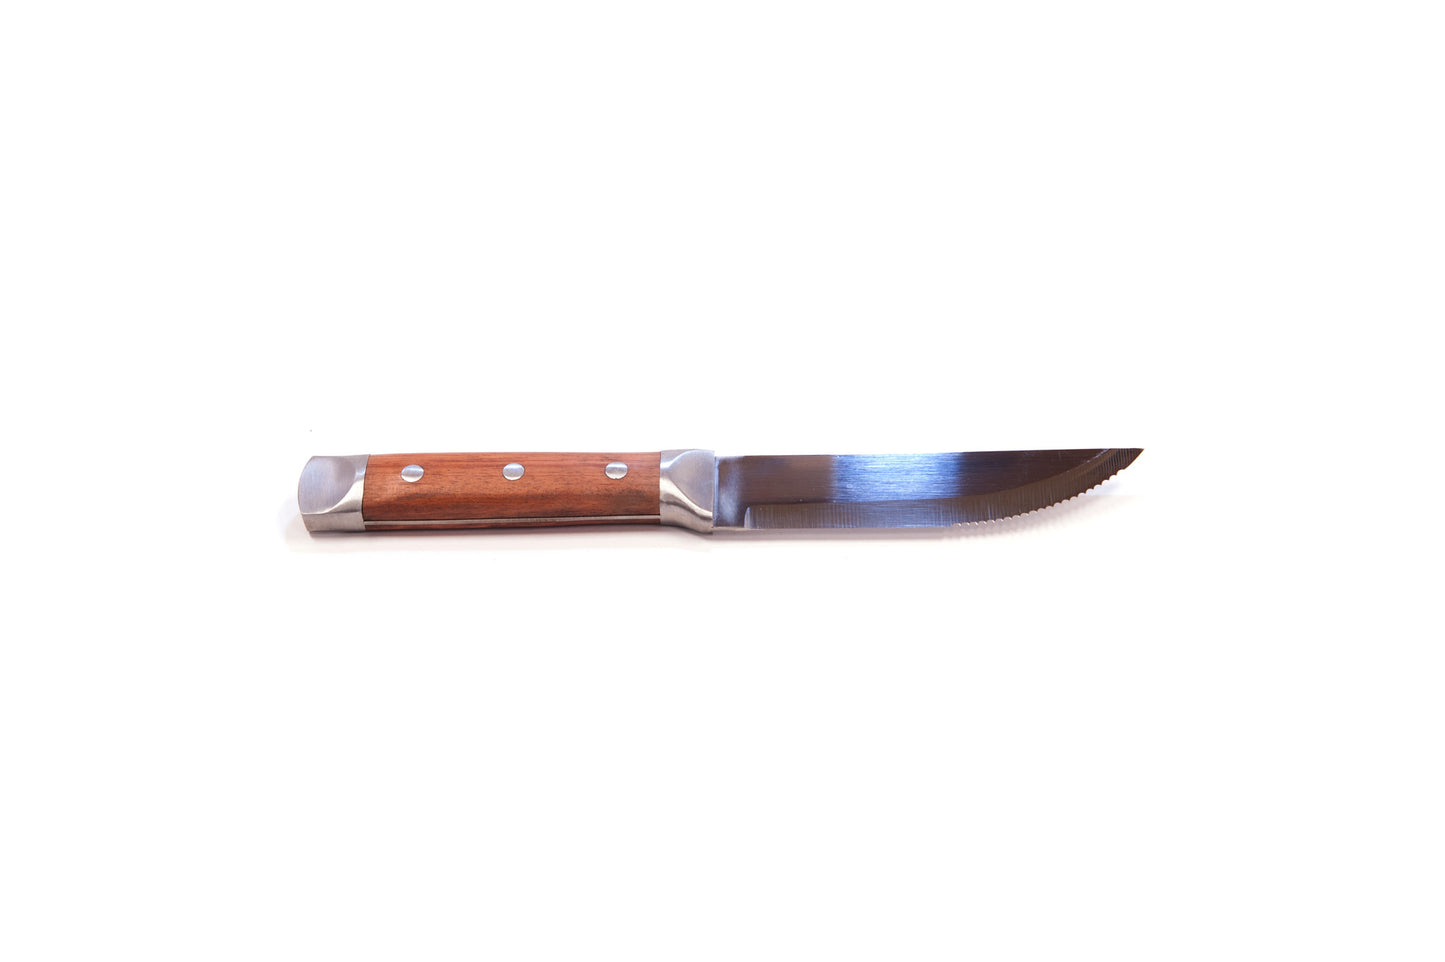 Brander Steak Knife with Rosewood Handle